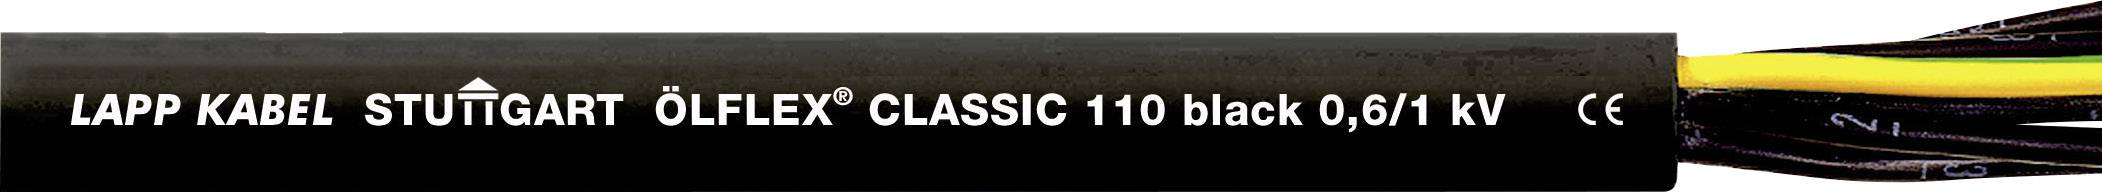 LAPP ÖLFLEX CLASSIC BLACK 110 Steuerleitung 3 G 1 mm² Schwarz 1120267-1 Meterware